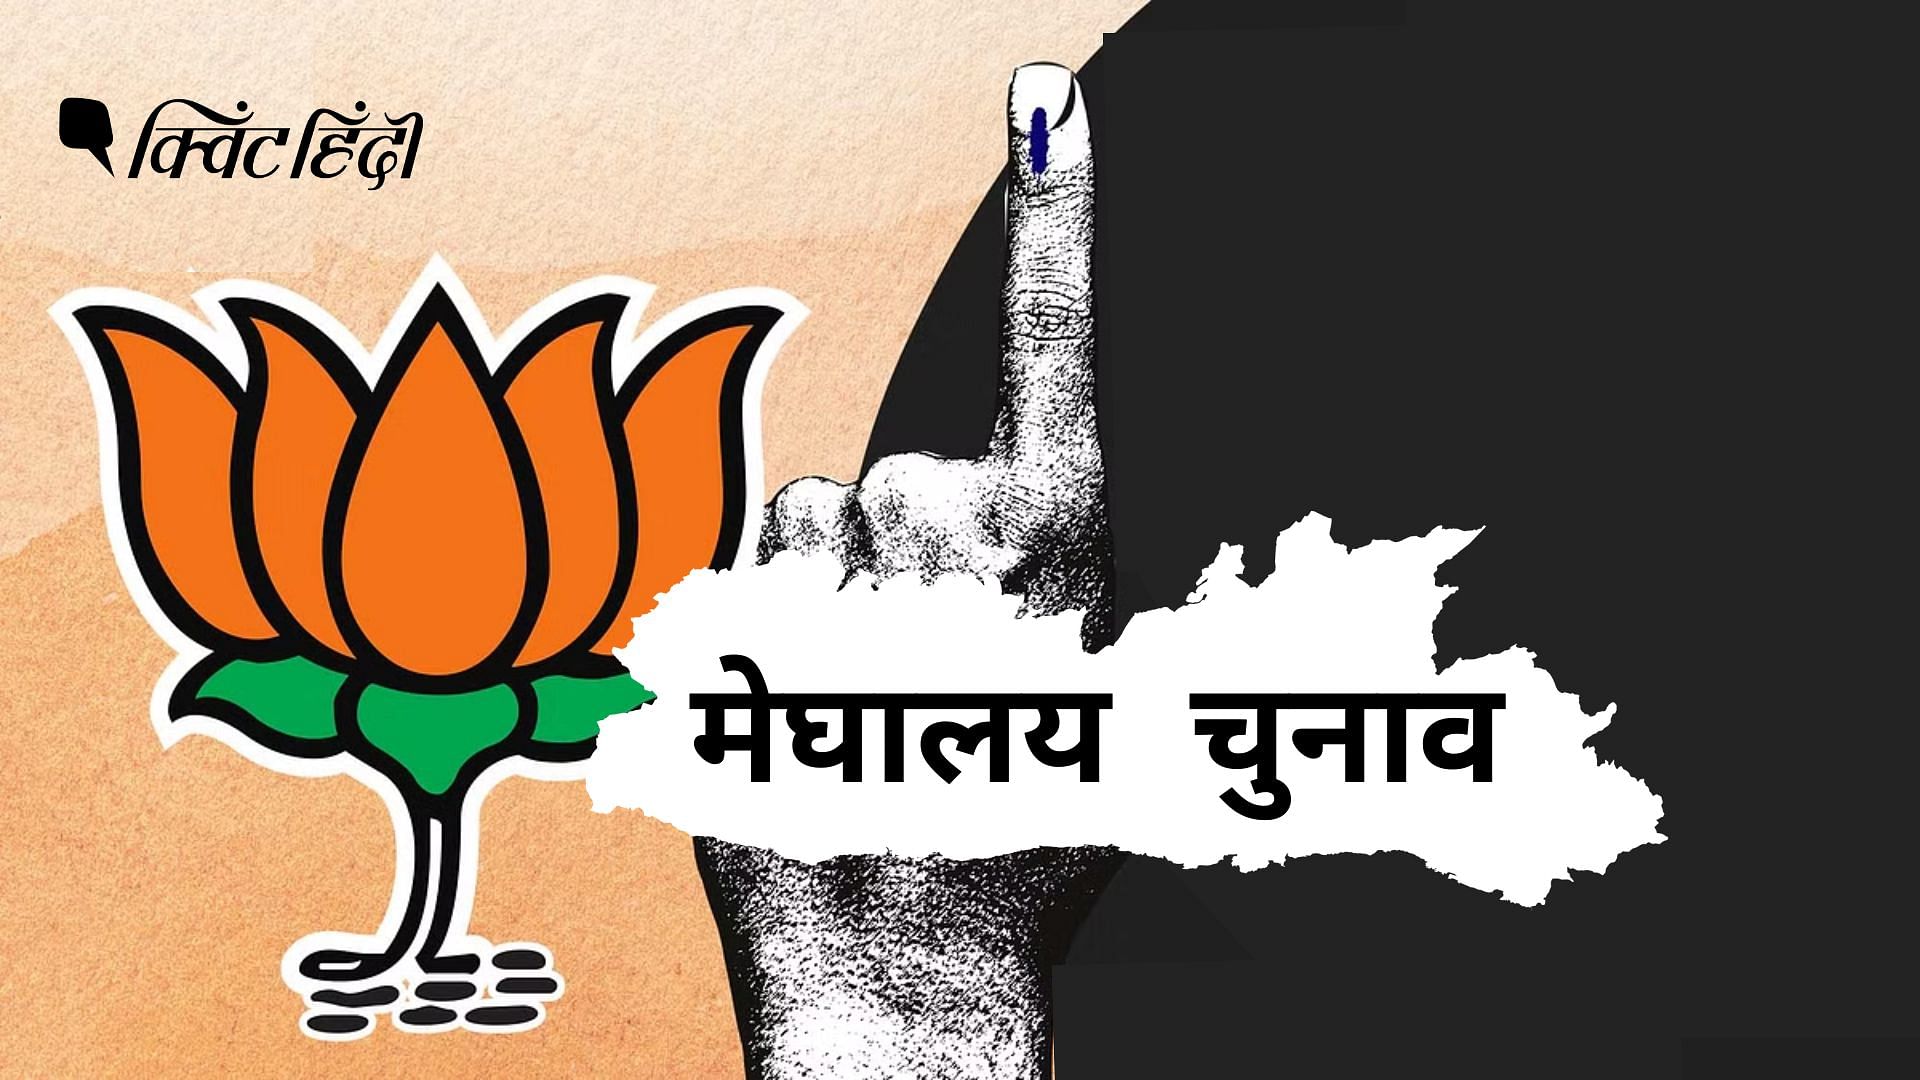 <div class="paragraphs"><p>Meghalaya Elections: बिना जनाधार कैसे होगी नैया पार?BJP के सामने हैं 3 चुनौतियां</p></div>